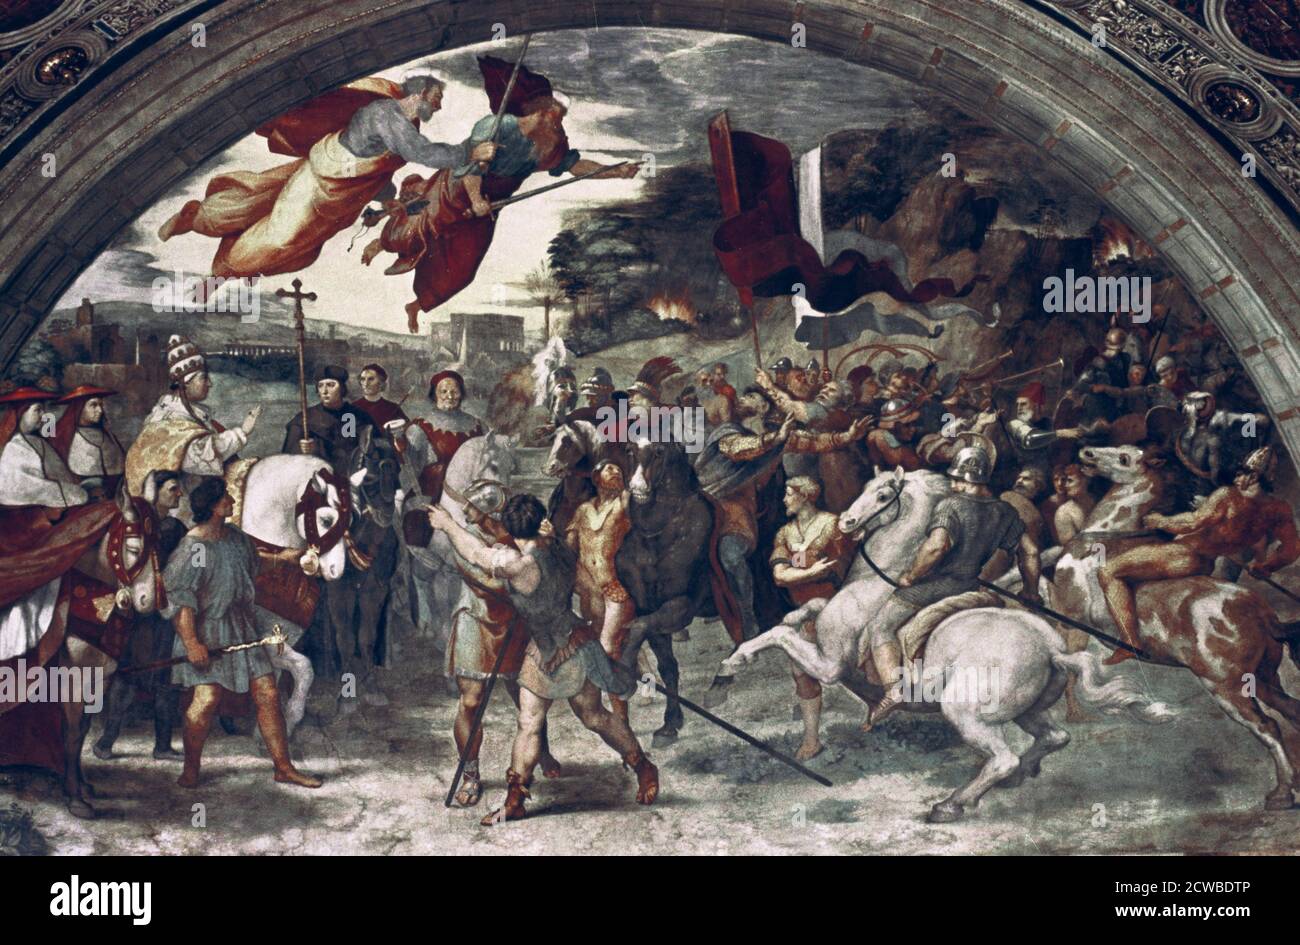 Papst Leo I., abstoßend Attila', (Detail), 1511-14. Künstler: Raphael. Raphael (1483-1520) war ein italienischer Maler und Architekt der Hochrenaissance. Seine Arbeit wird für seine Klarheit der Form, Leichtigkeit der Komposition und visuelle Leistung der menschlichen Größe bewundert. Stockfoto